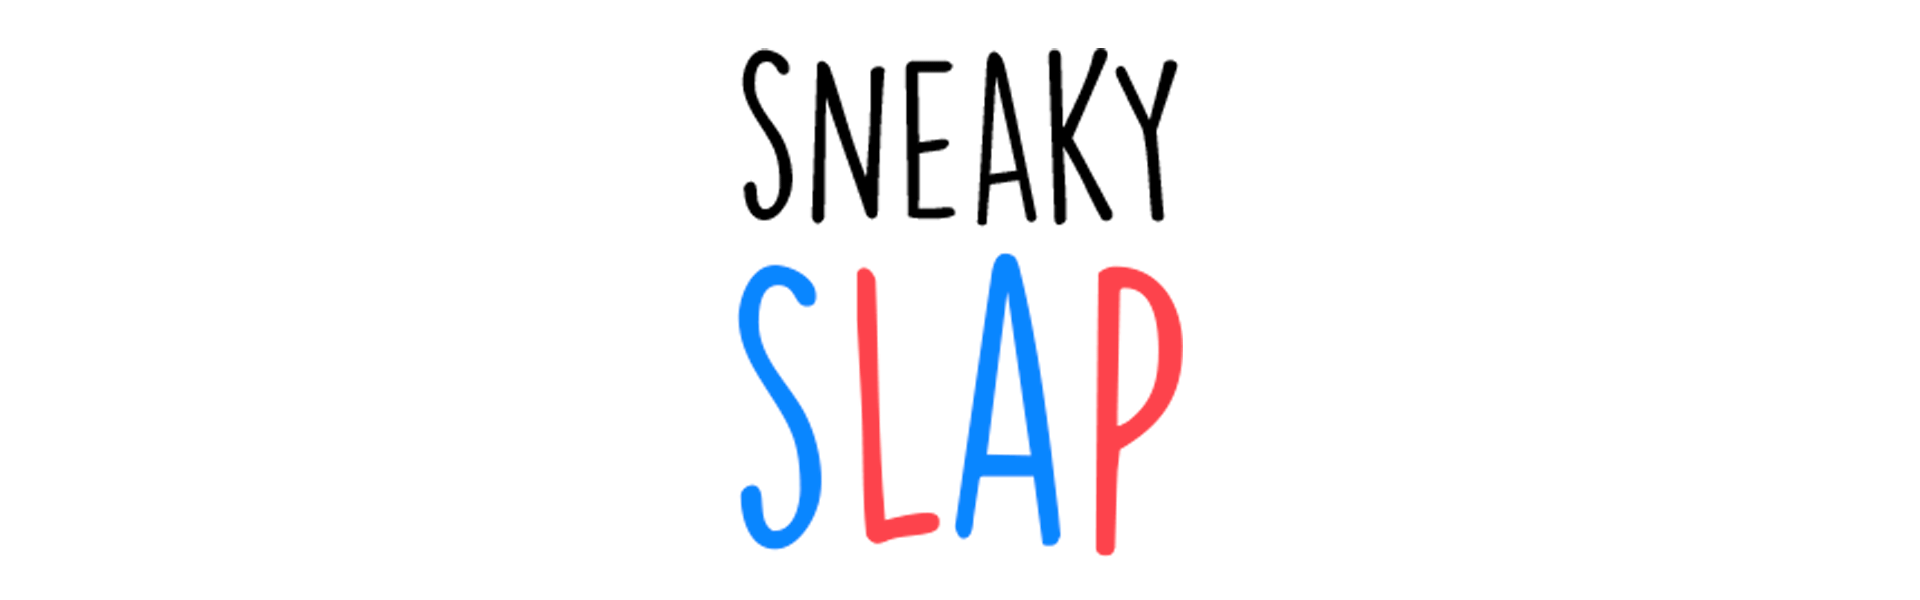 Sneaky slap